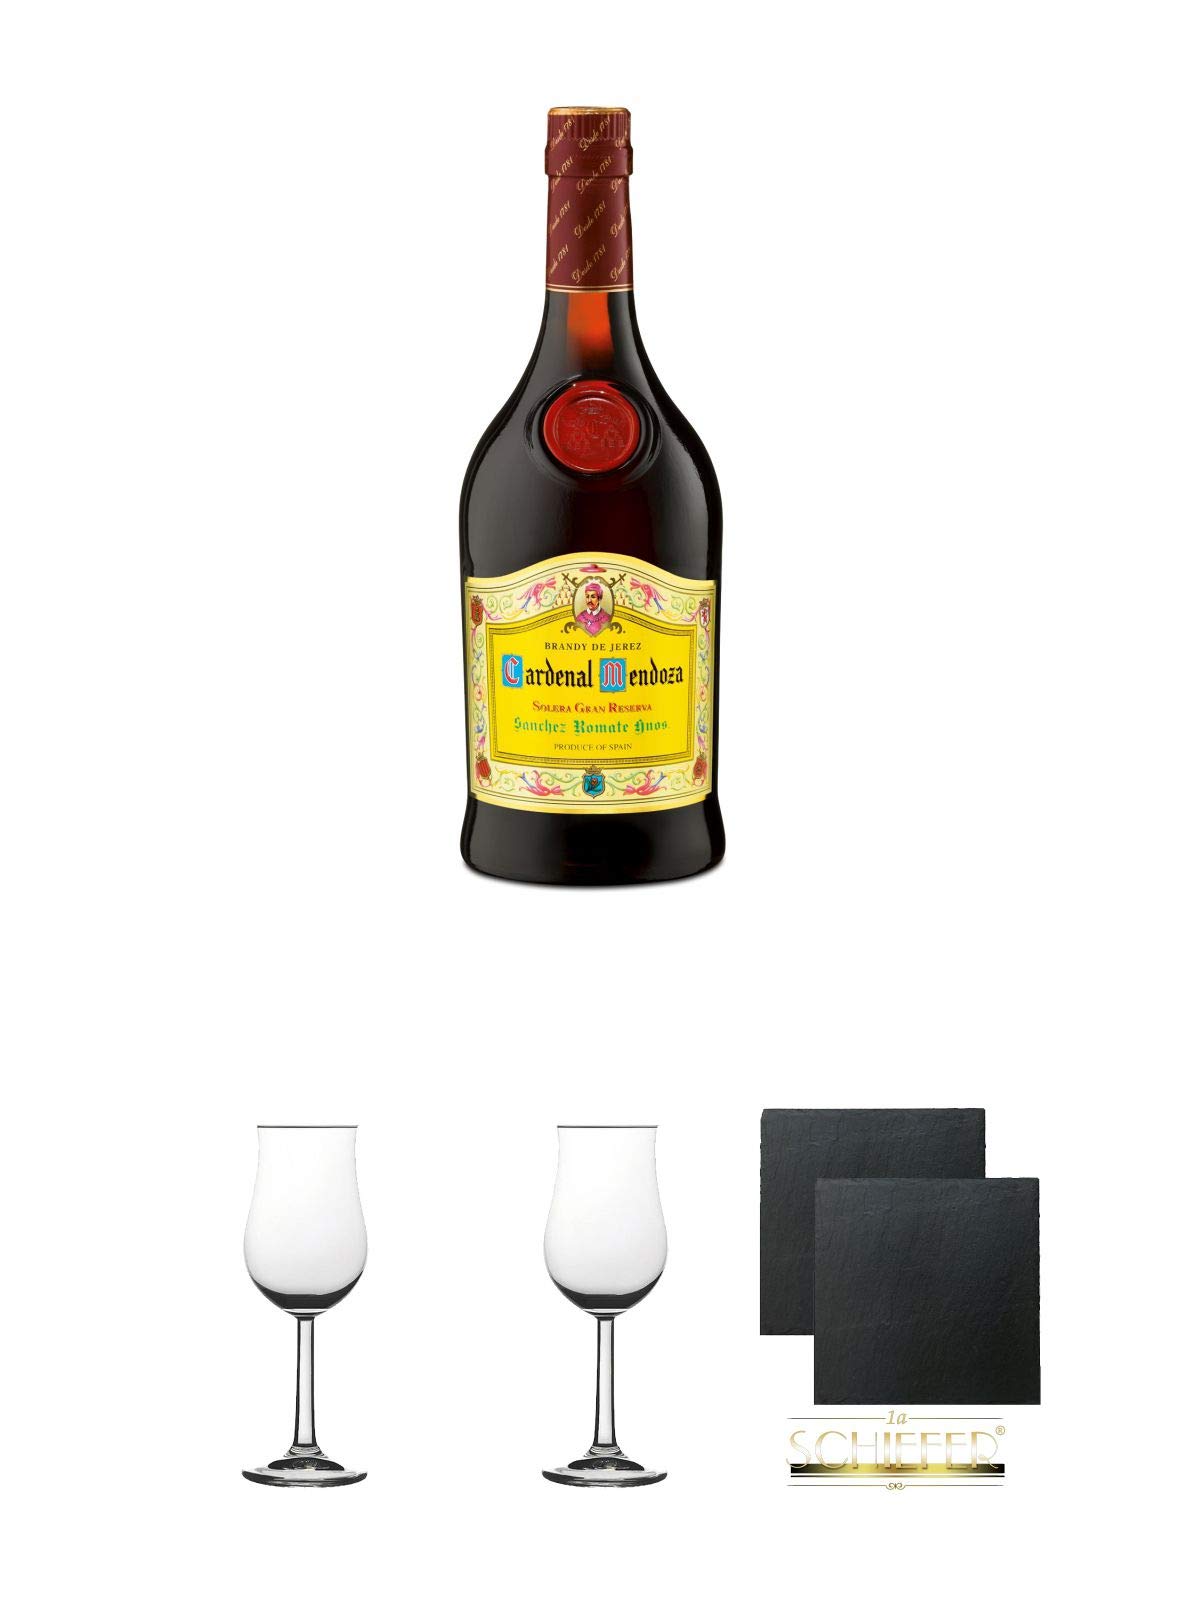 Cardenal Mendoza spanischer Brandy 0,7 Liter + Gläser